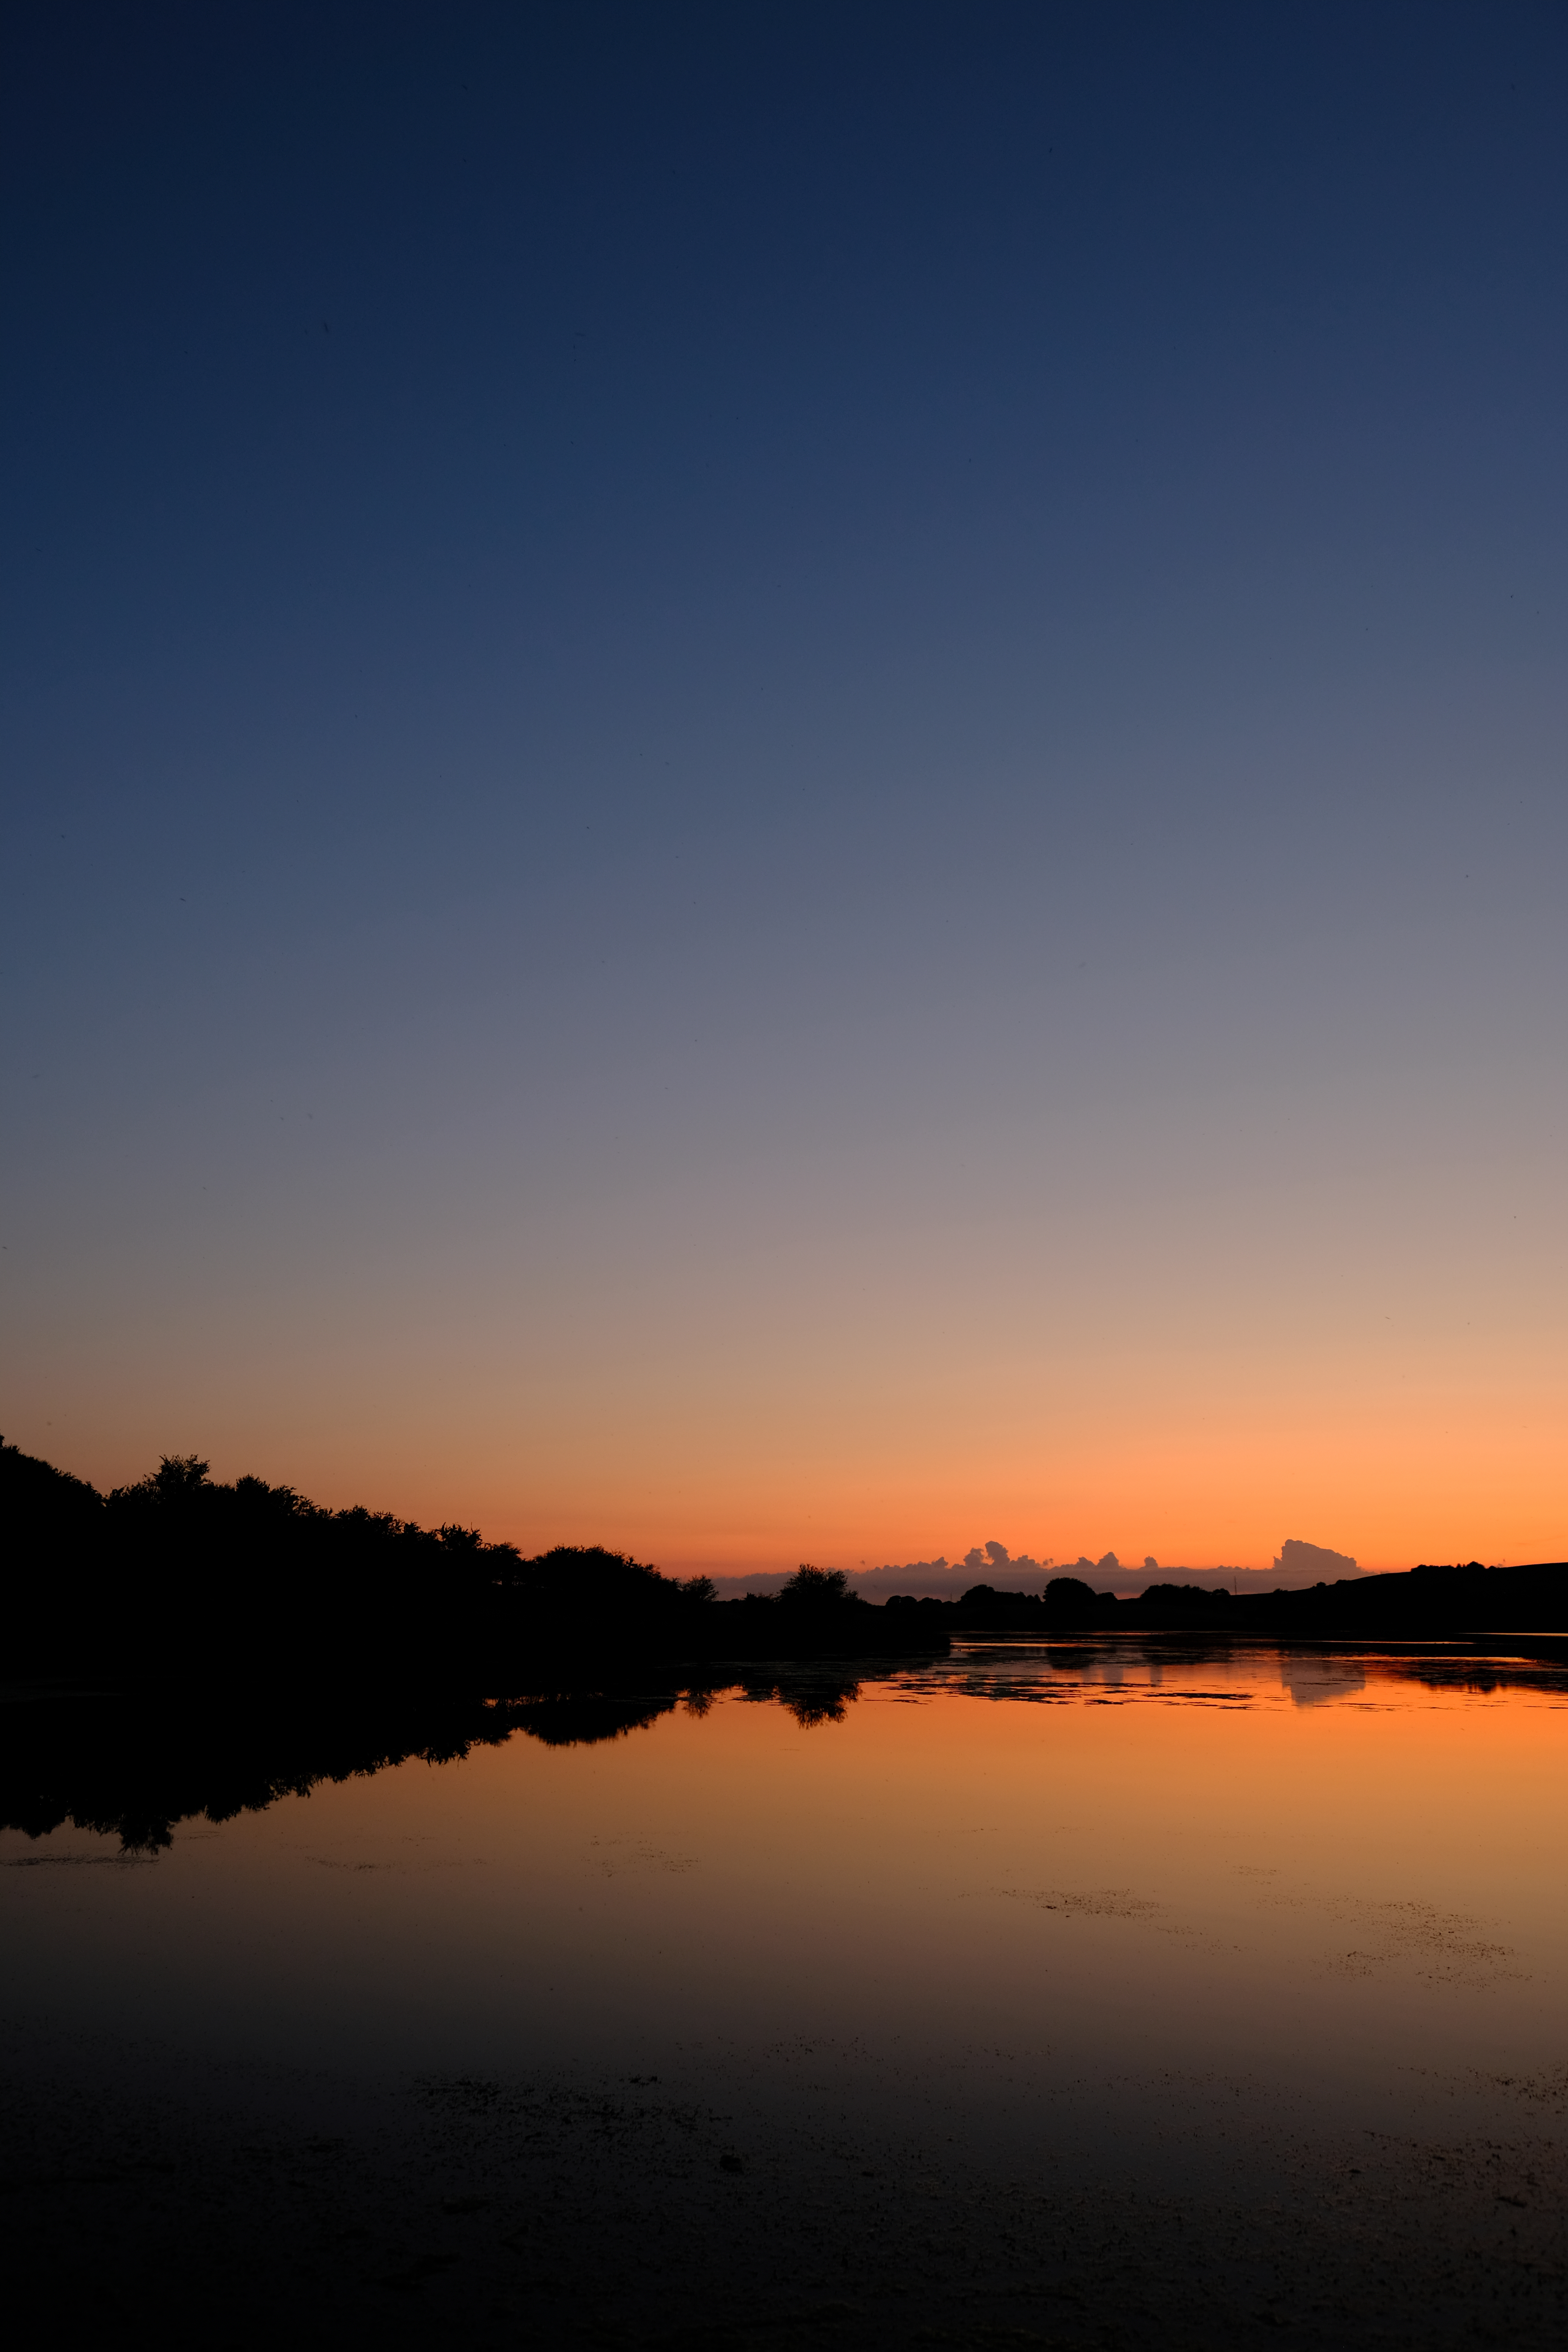 twilight, landscape, nature, sunset, lake, dark, dusk Image for desktop